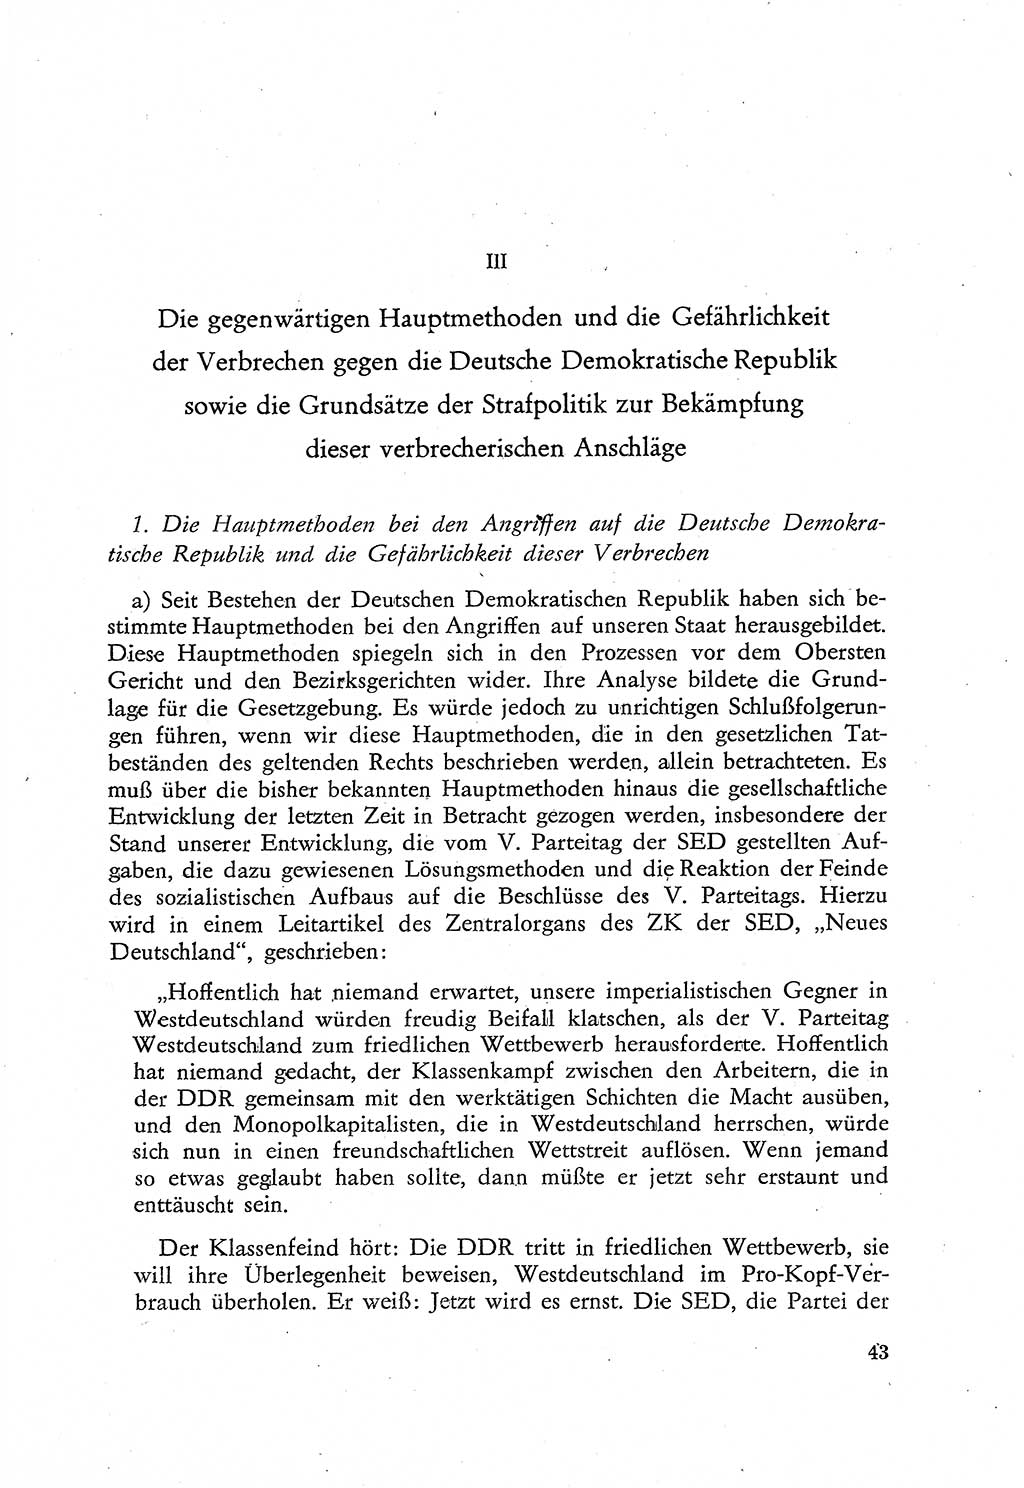 Beiträge zum Strafrecht [Deutsche Demokratische Republik (DDR)], Staatsverbrechen 1959, Seite 43 (Beitr. Strafr. DDR St.-Verbr. 1959, S. 43)